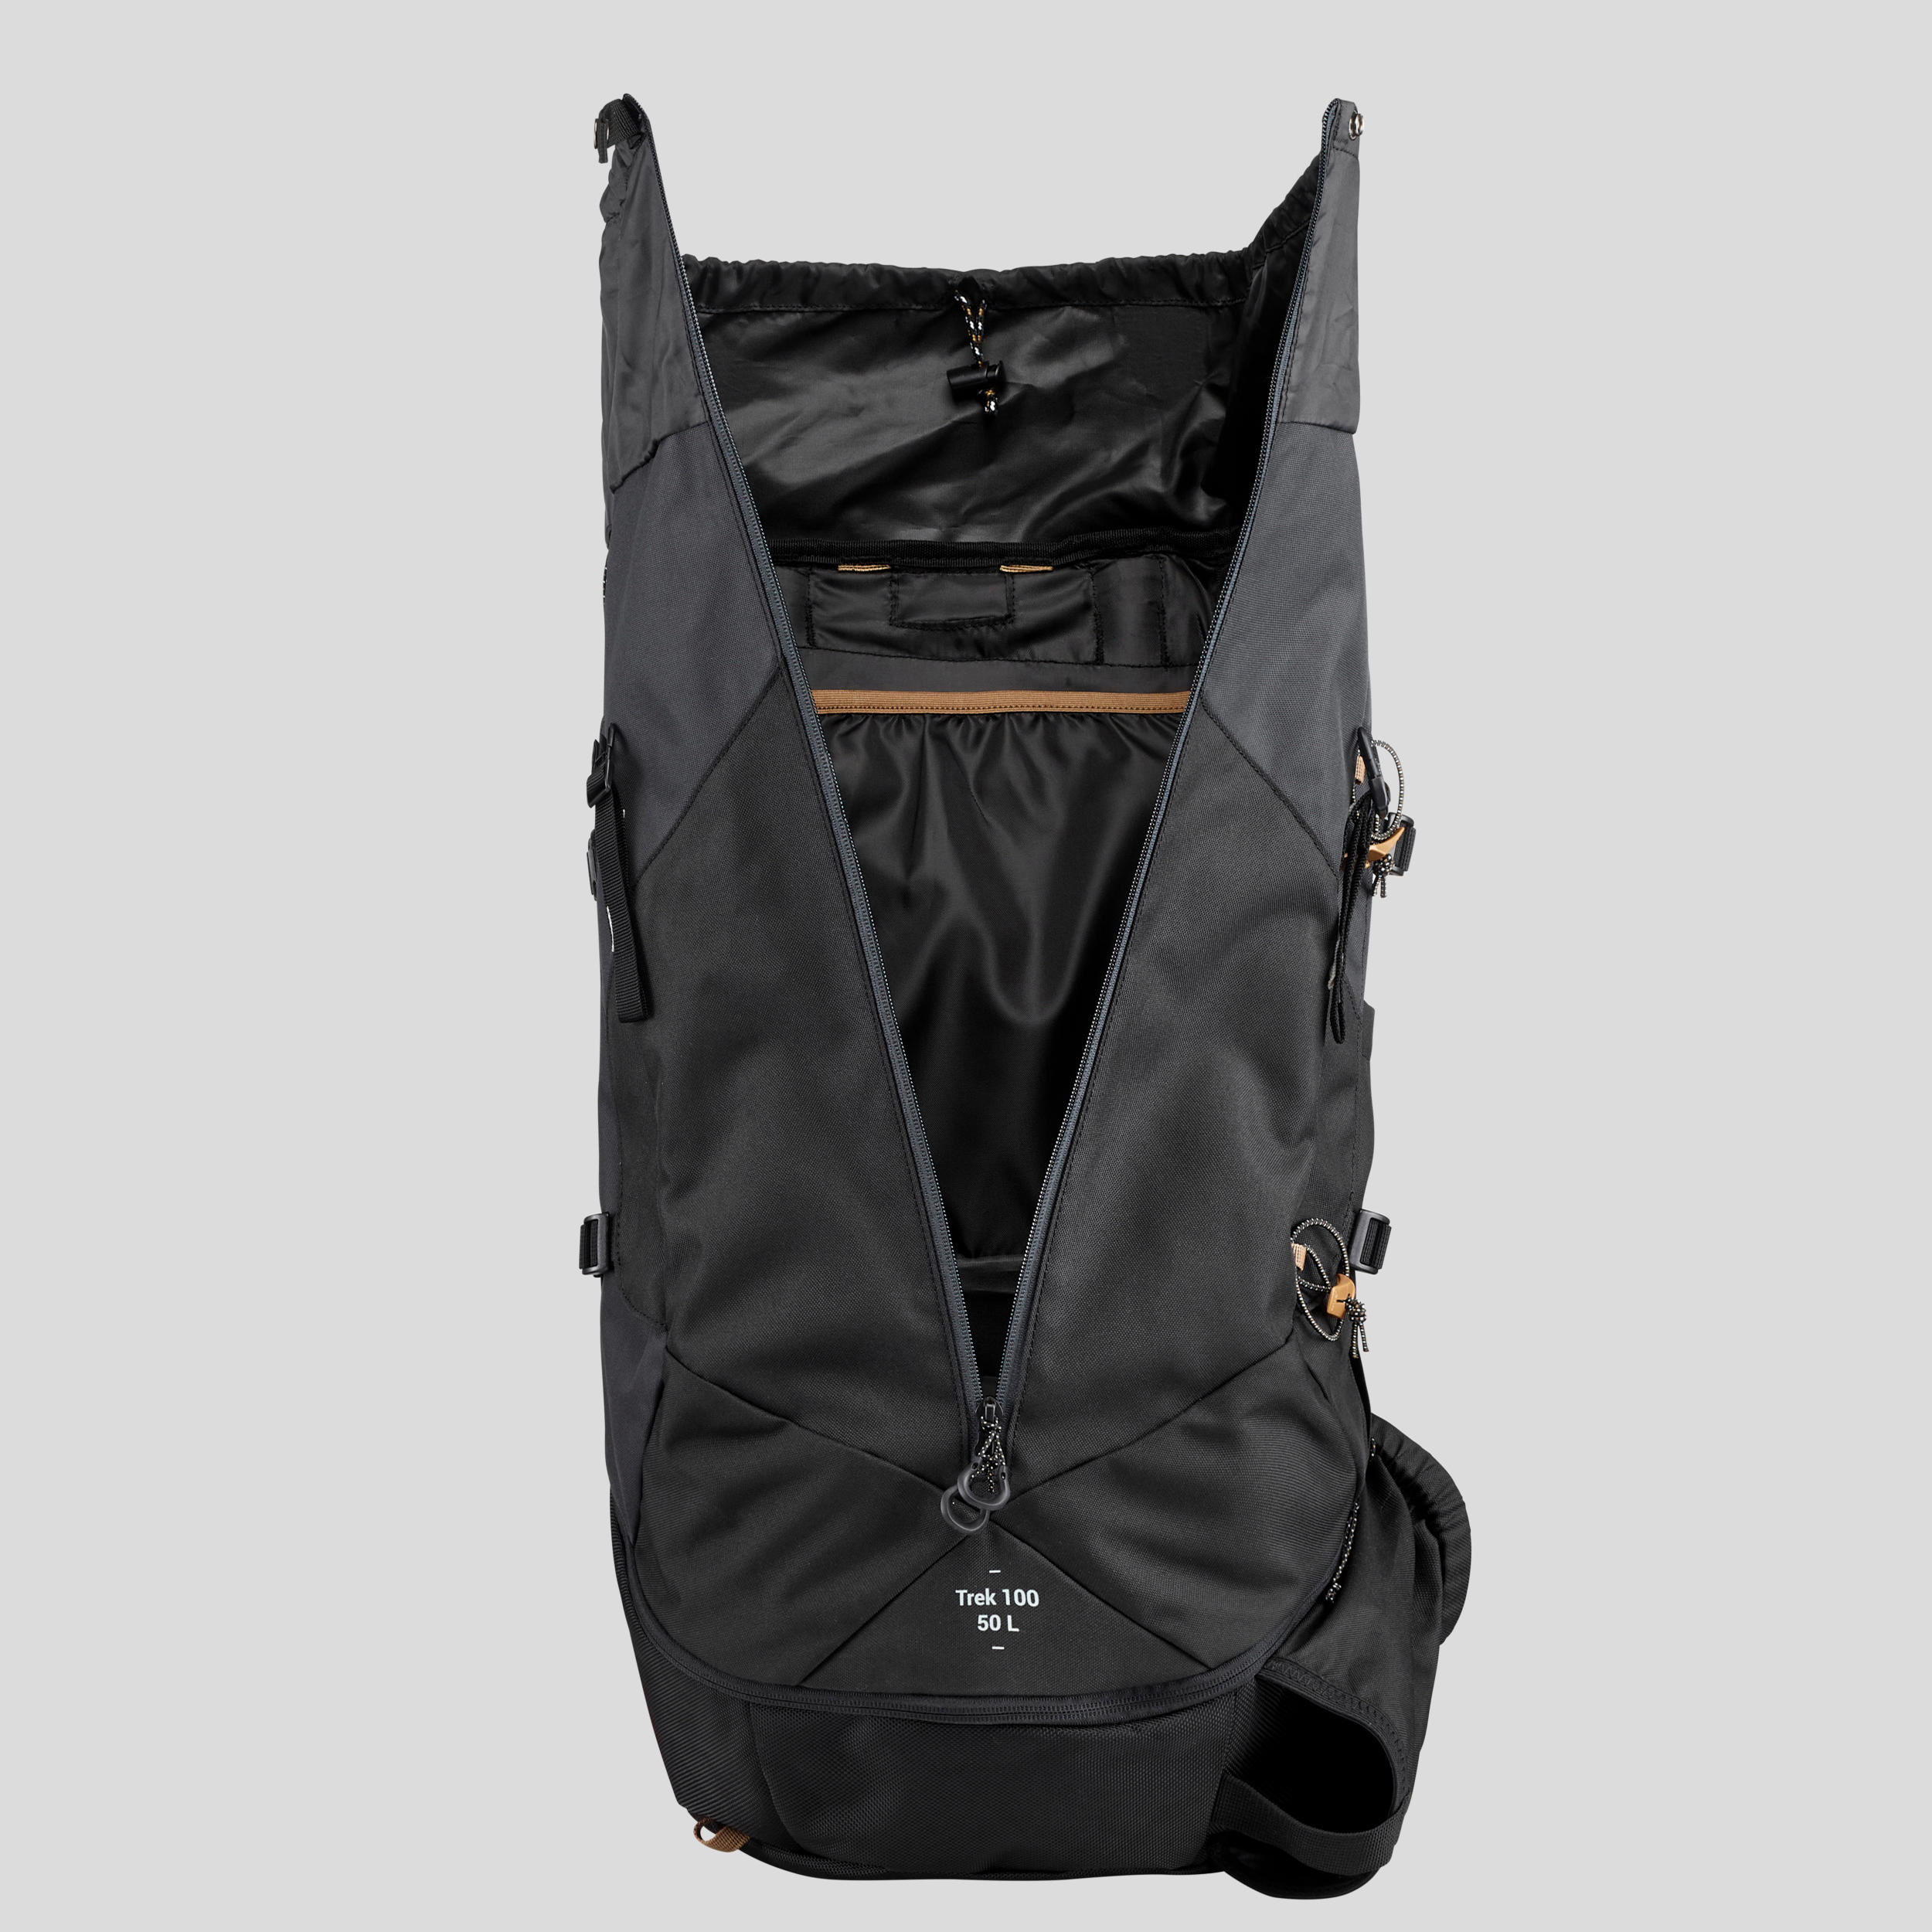 Men's 50 L Hiking Backpack - Easyfit MT 100 - Carbon grey, black - Forclaz  - Decathlon